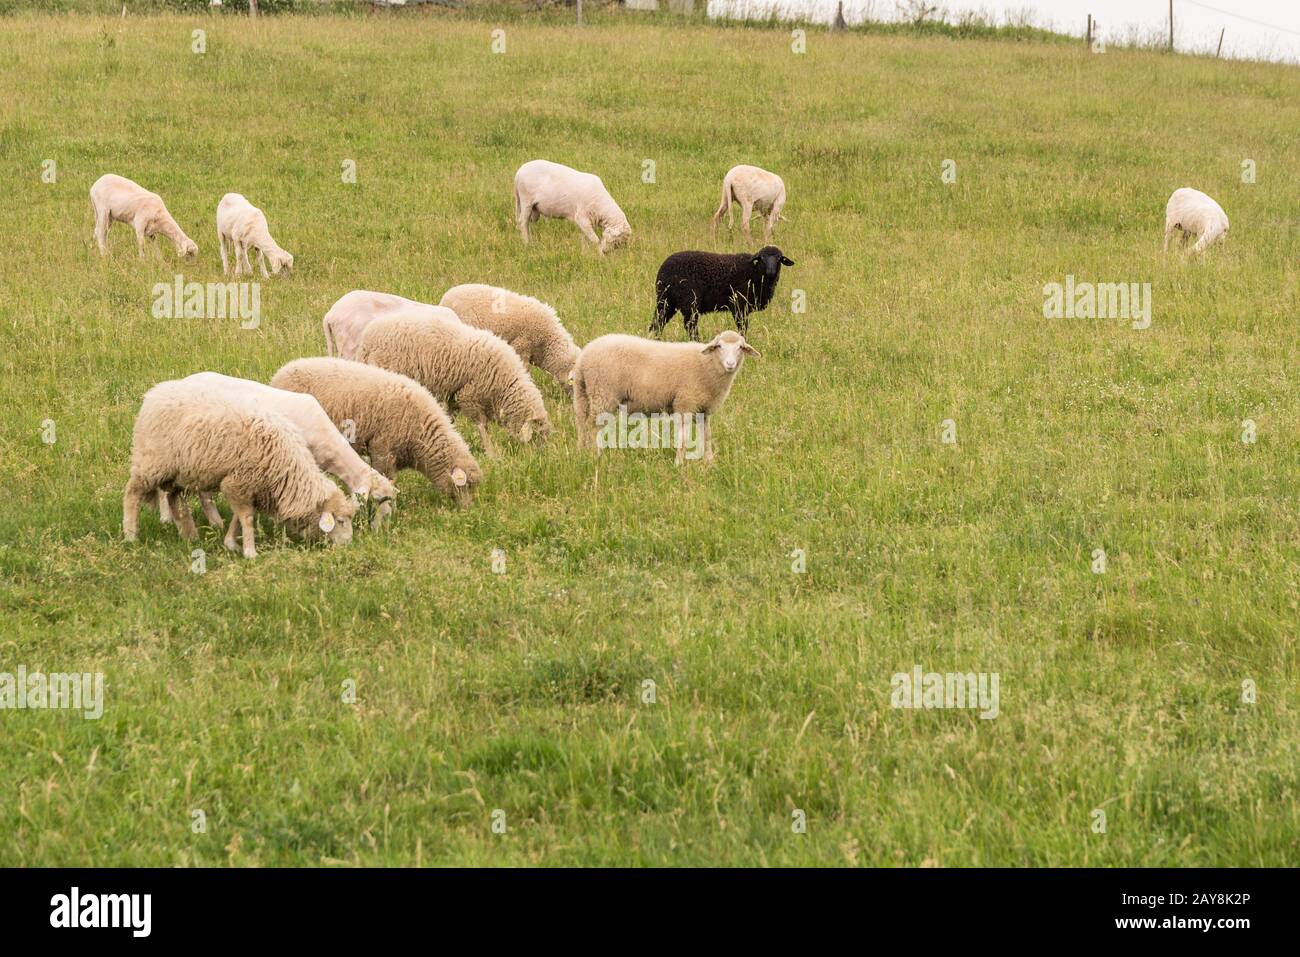 Un mouton noir au milieu d'un troupeau de moutons blancs dans le pâturage Banque D'Images